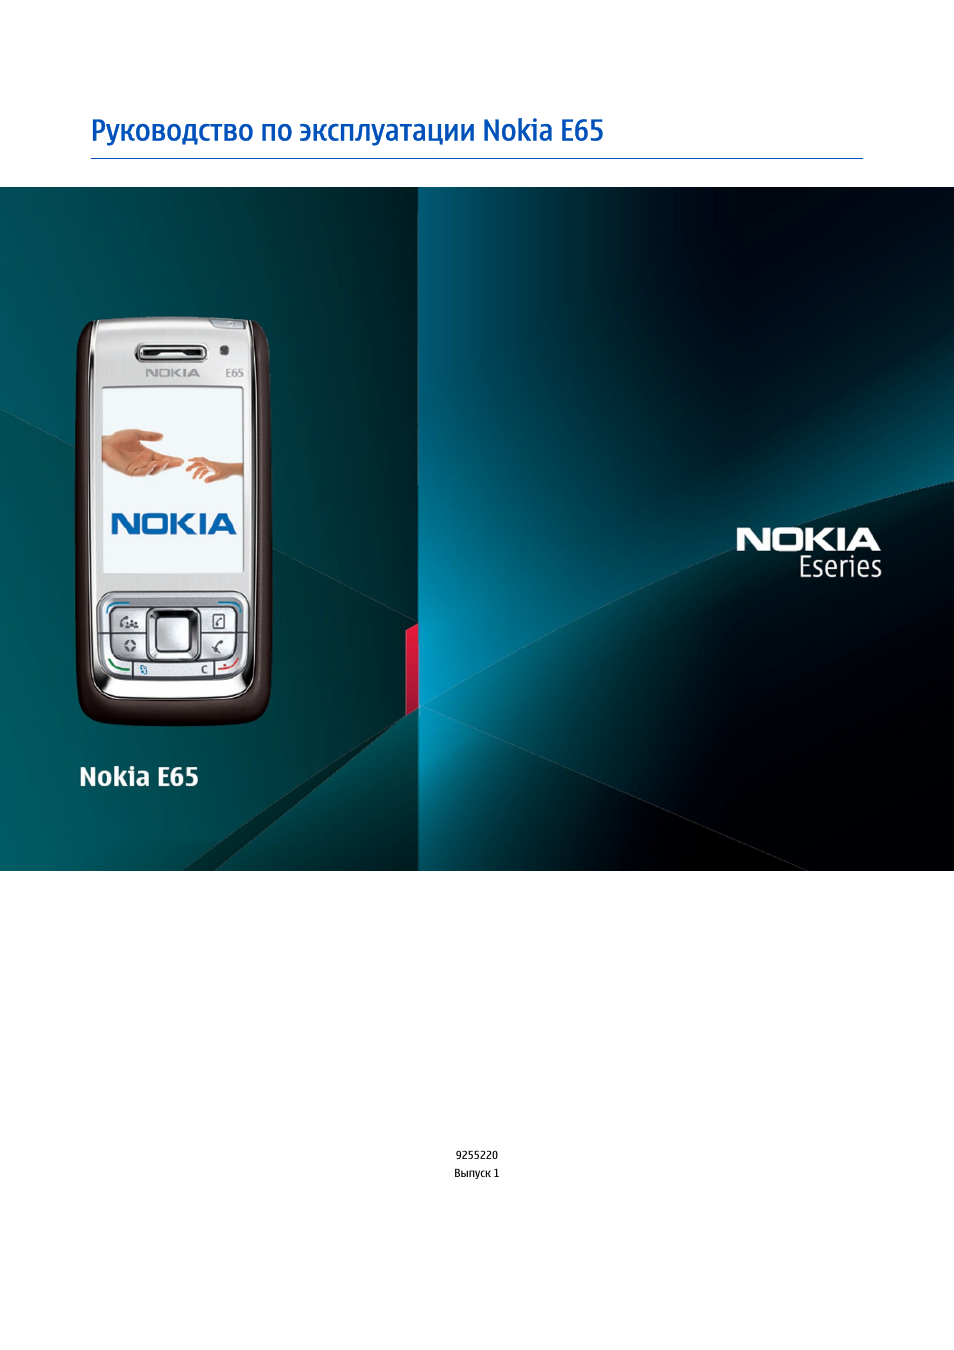 Телефоны нокиа инструкция. Nokia e65-1. Nokia 65 00. Инструкция Nokia e65. Nokia Eseries.